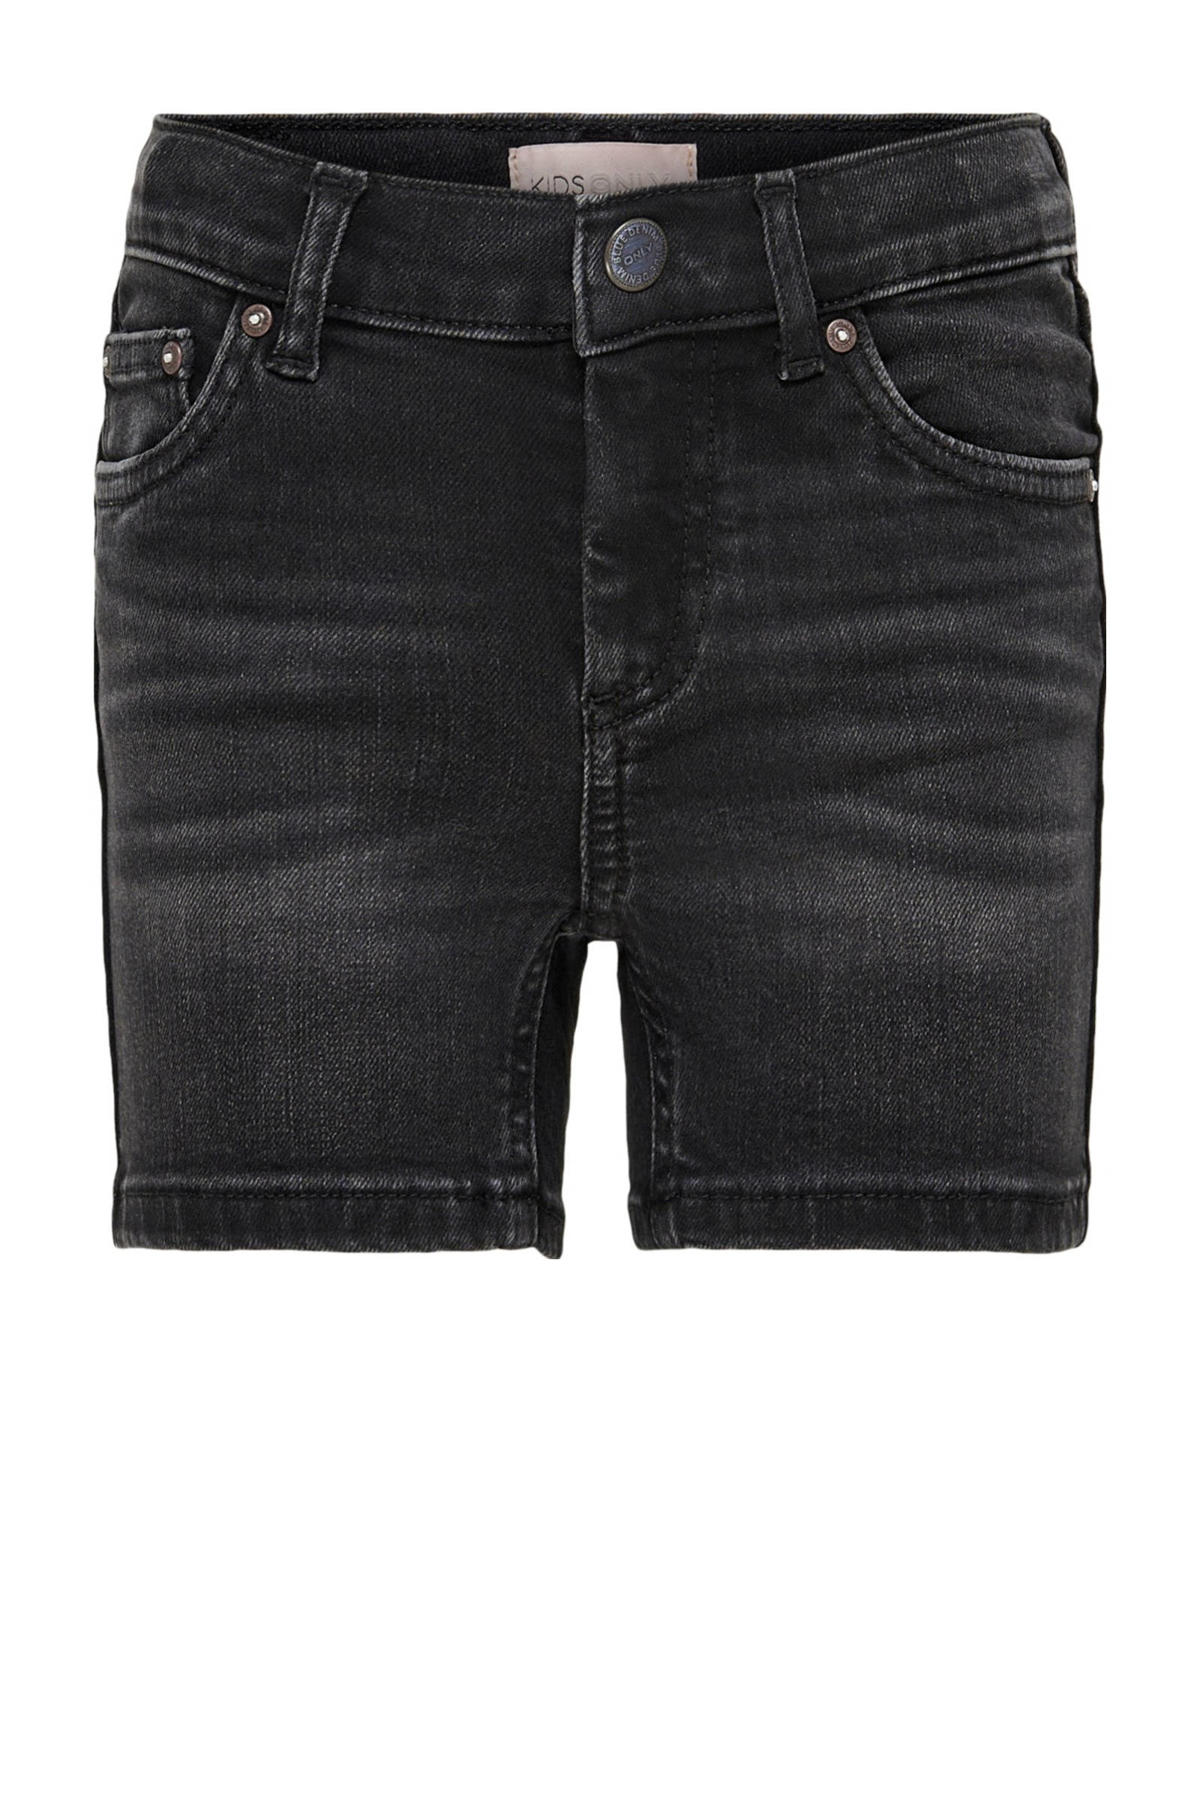 | wehkamp short jeans KIDS denim fit KONBLUSH GIRL black regular ONLY